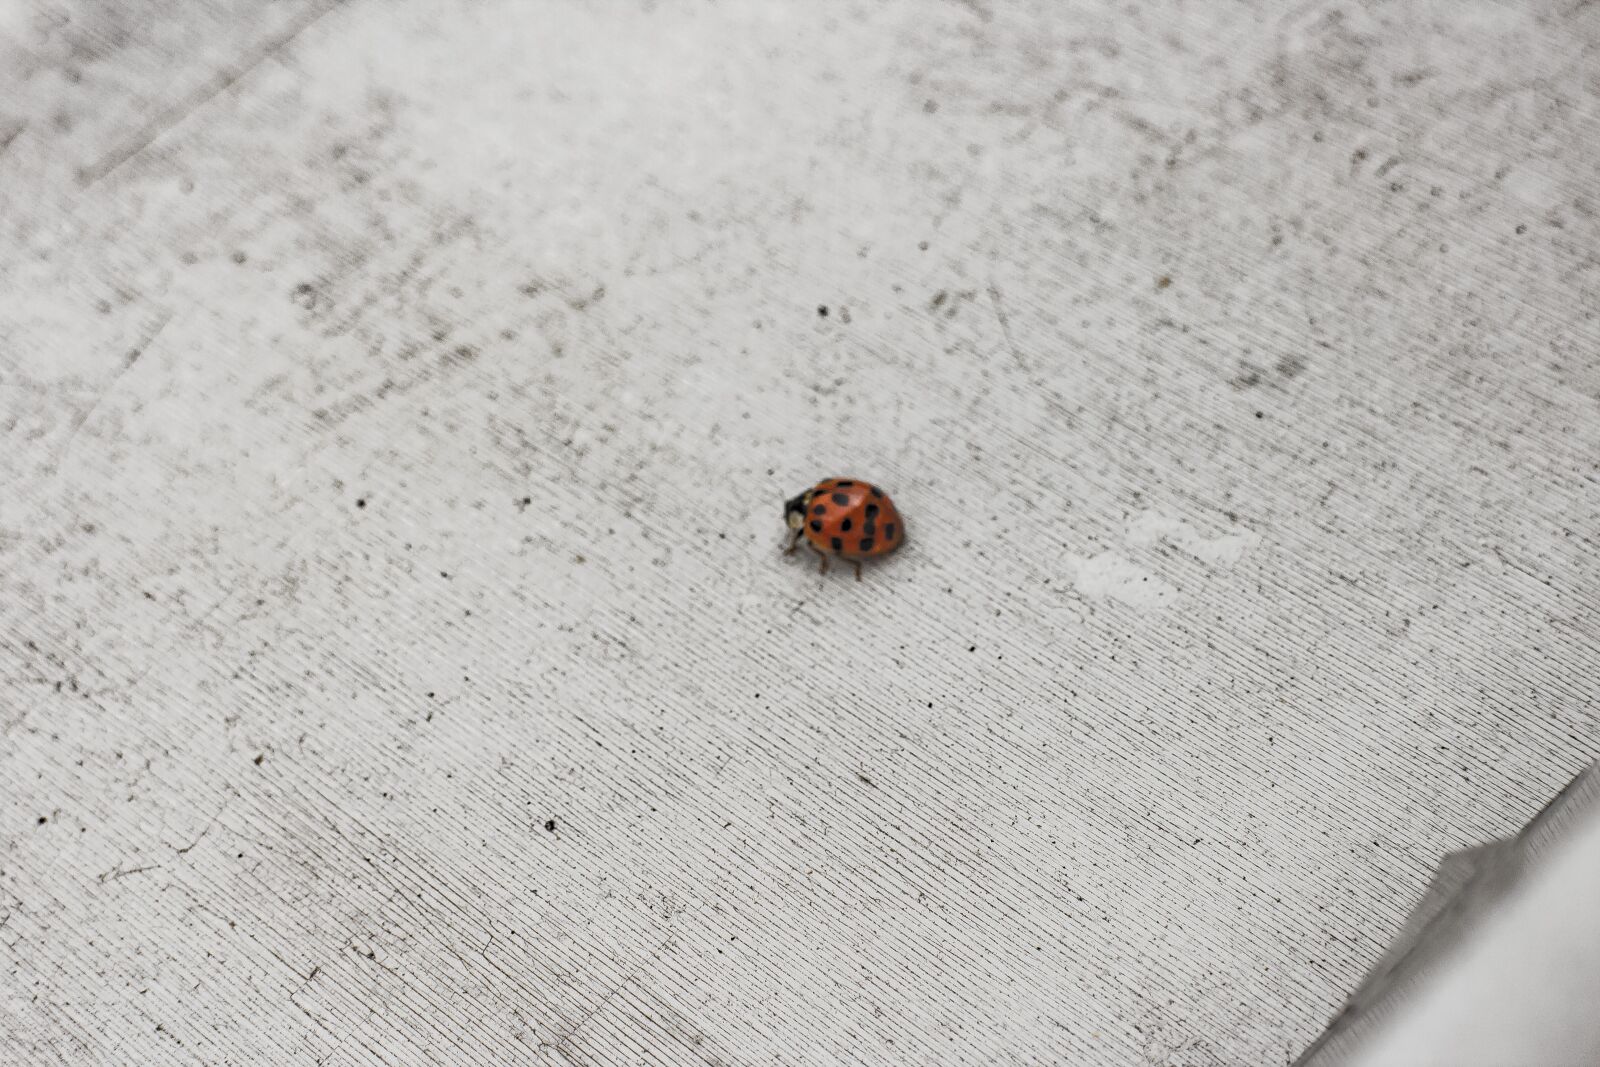 Canon EOS M sample photo. Ladybug, ladybugs, nature photography